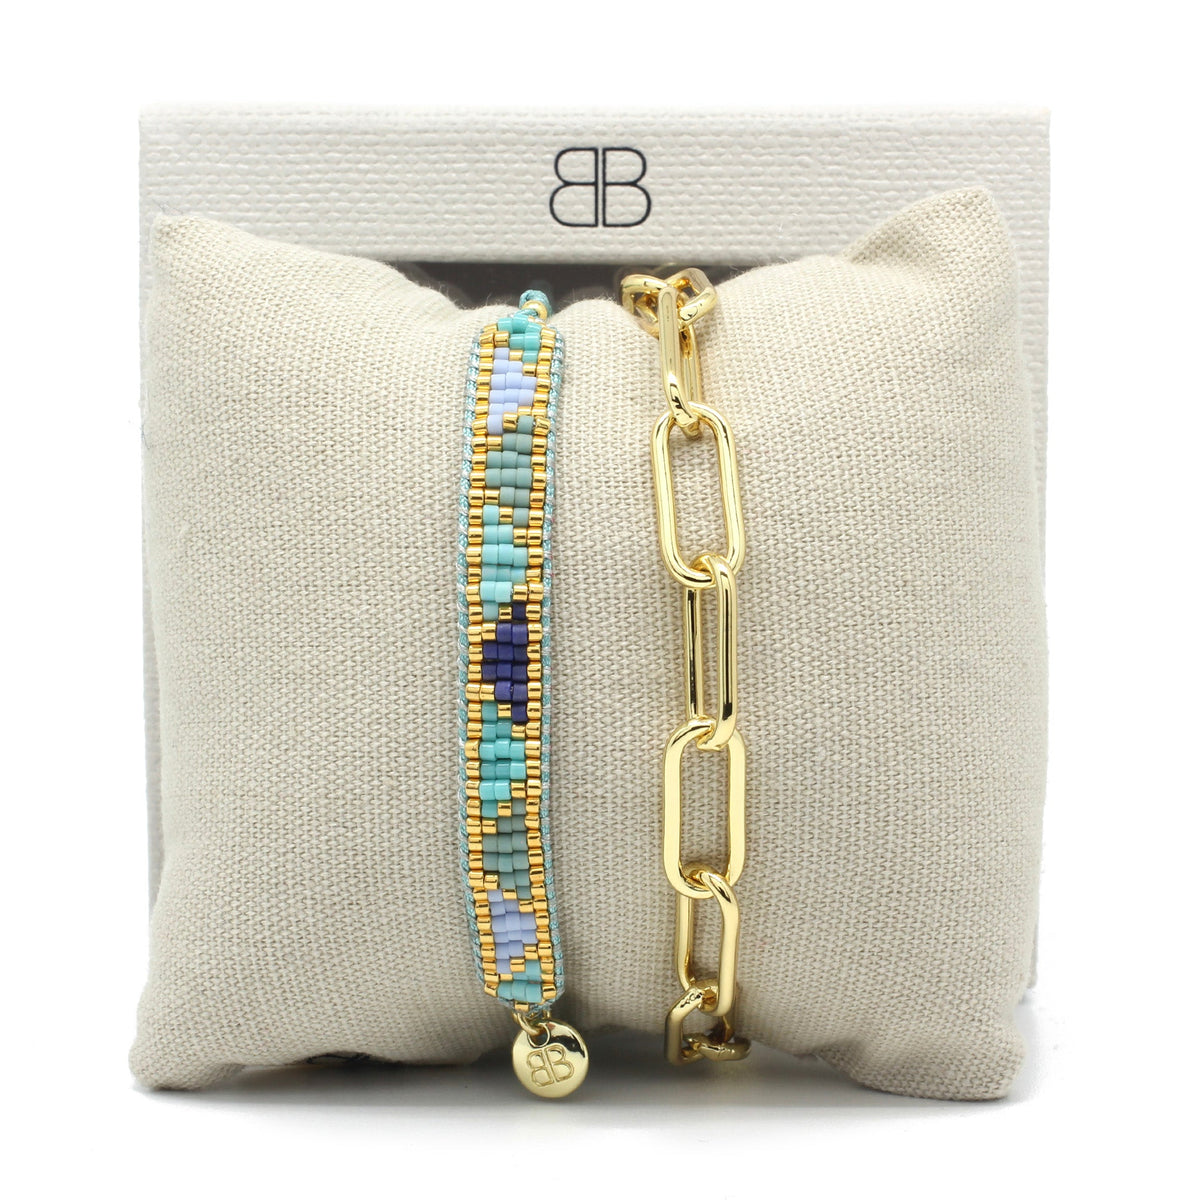 Segen Blue and Gold 2 Layer Bracelet Stack